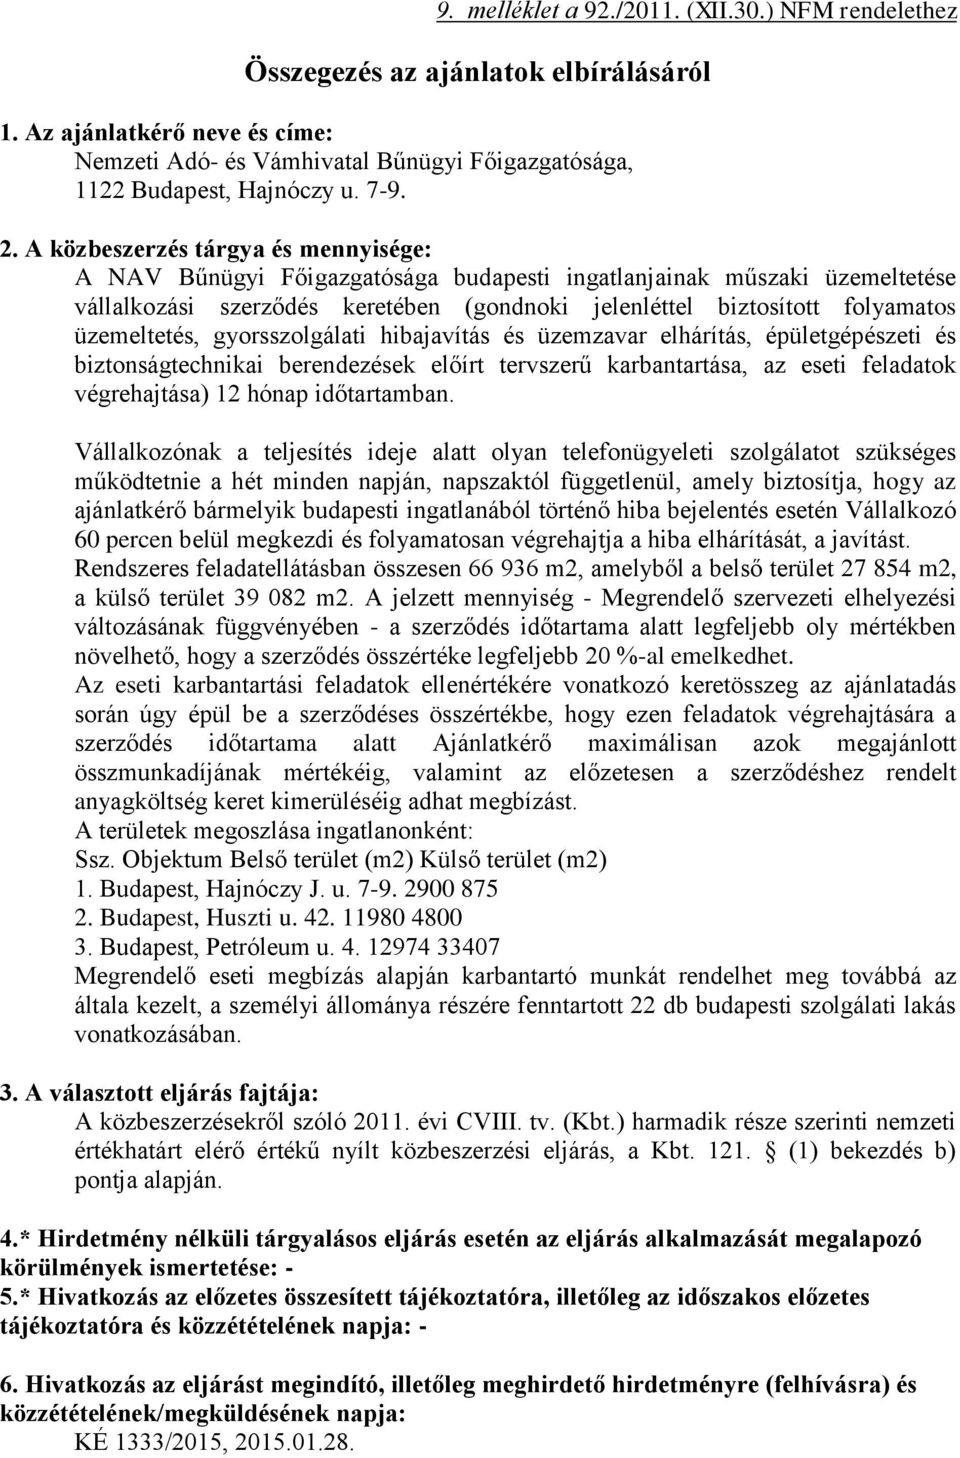 A közbeszerzés tárgya és mennyisége: A NAV Bűnügyi Főigazgatósága budapesti ingatlanjainak műszaki üzemeltetése vállalkozási szerződés keretében (gondnoki jelenléttel biztosított folyamatos